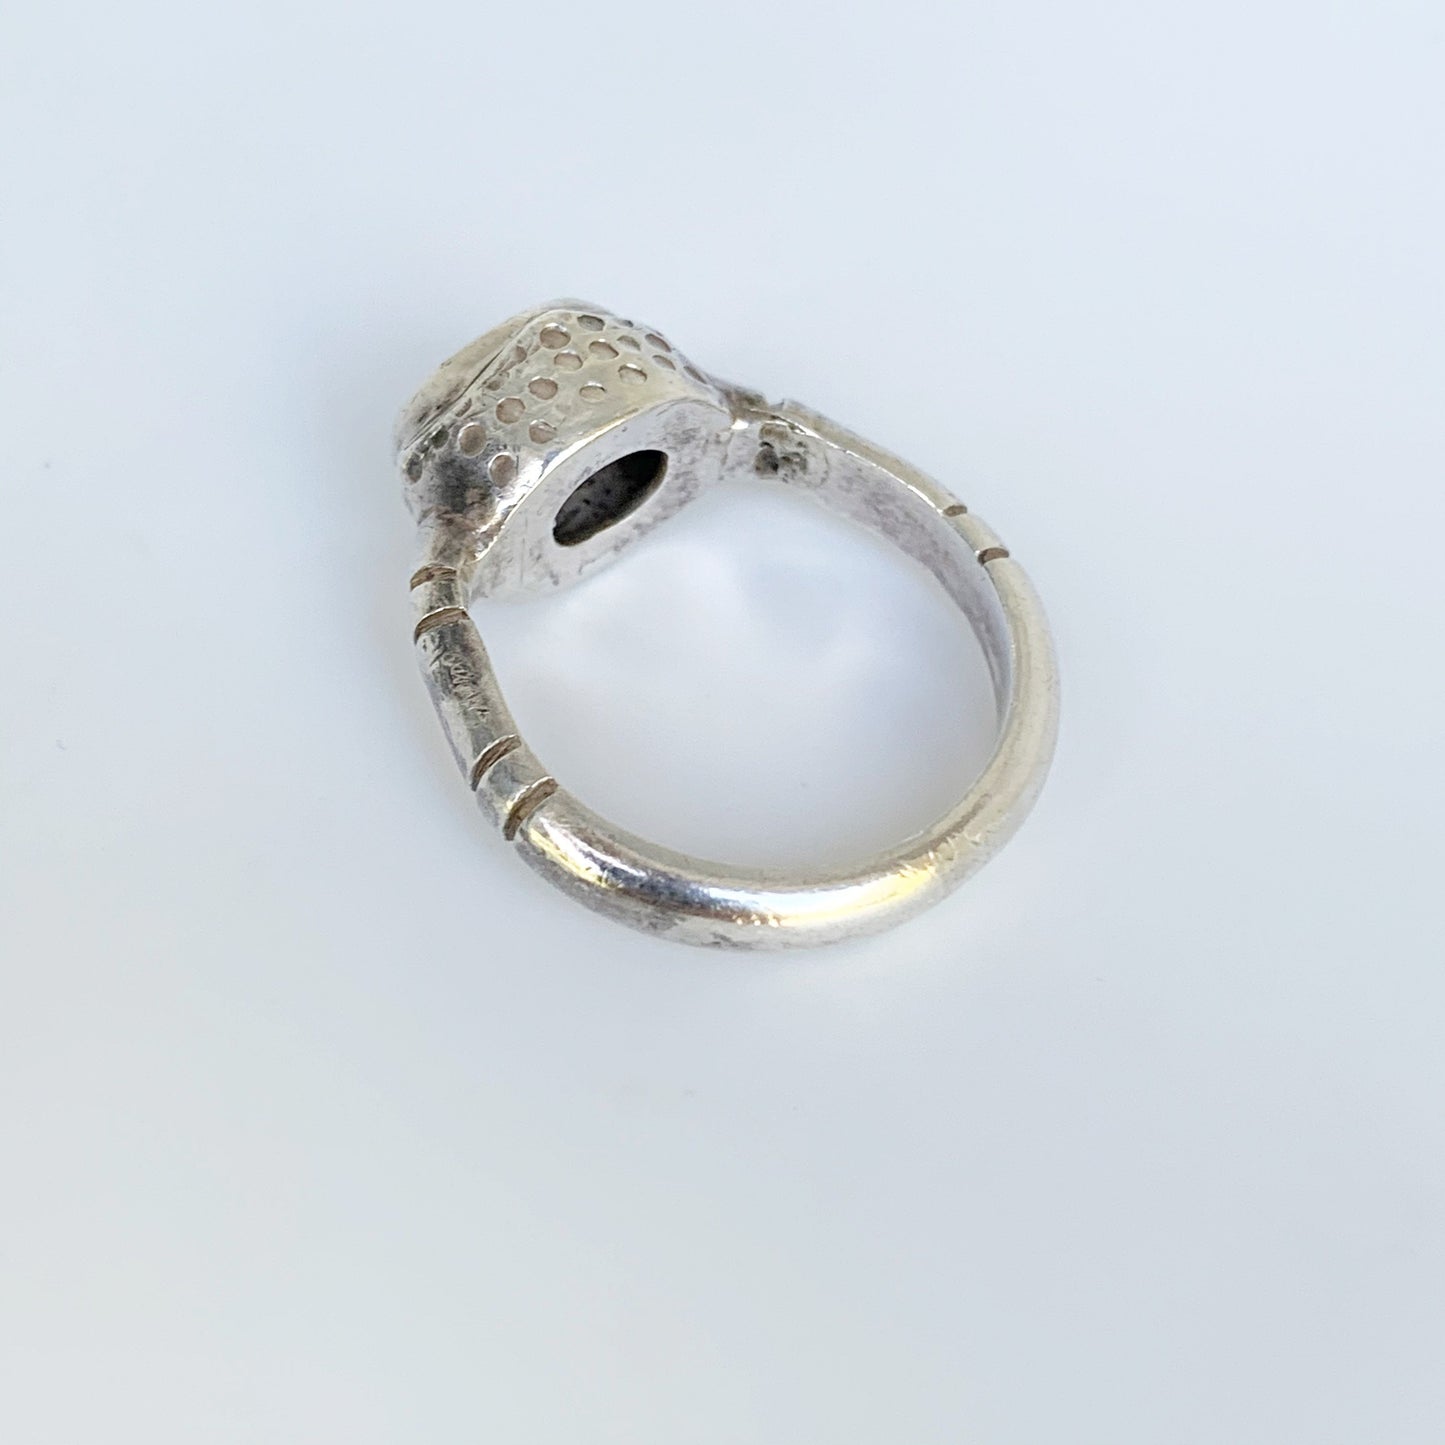 Silver Labradorite Ring | Oval Labradorite Ring | Textured Ring | Size 6 3/4 Ring